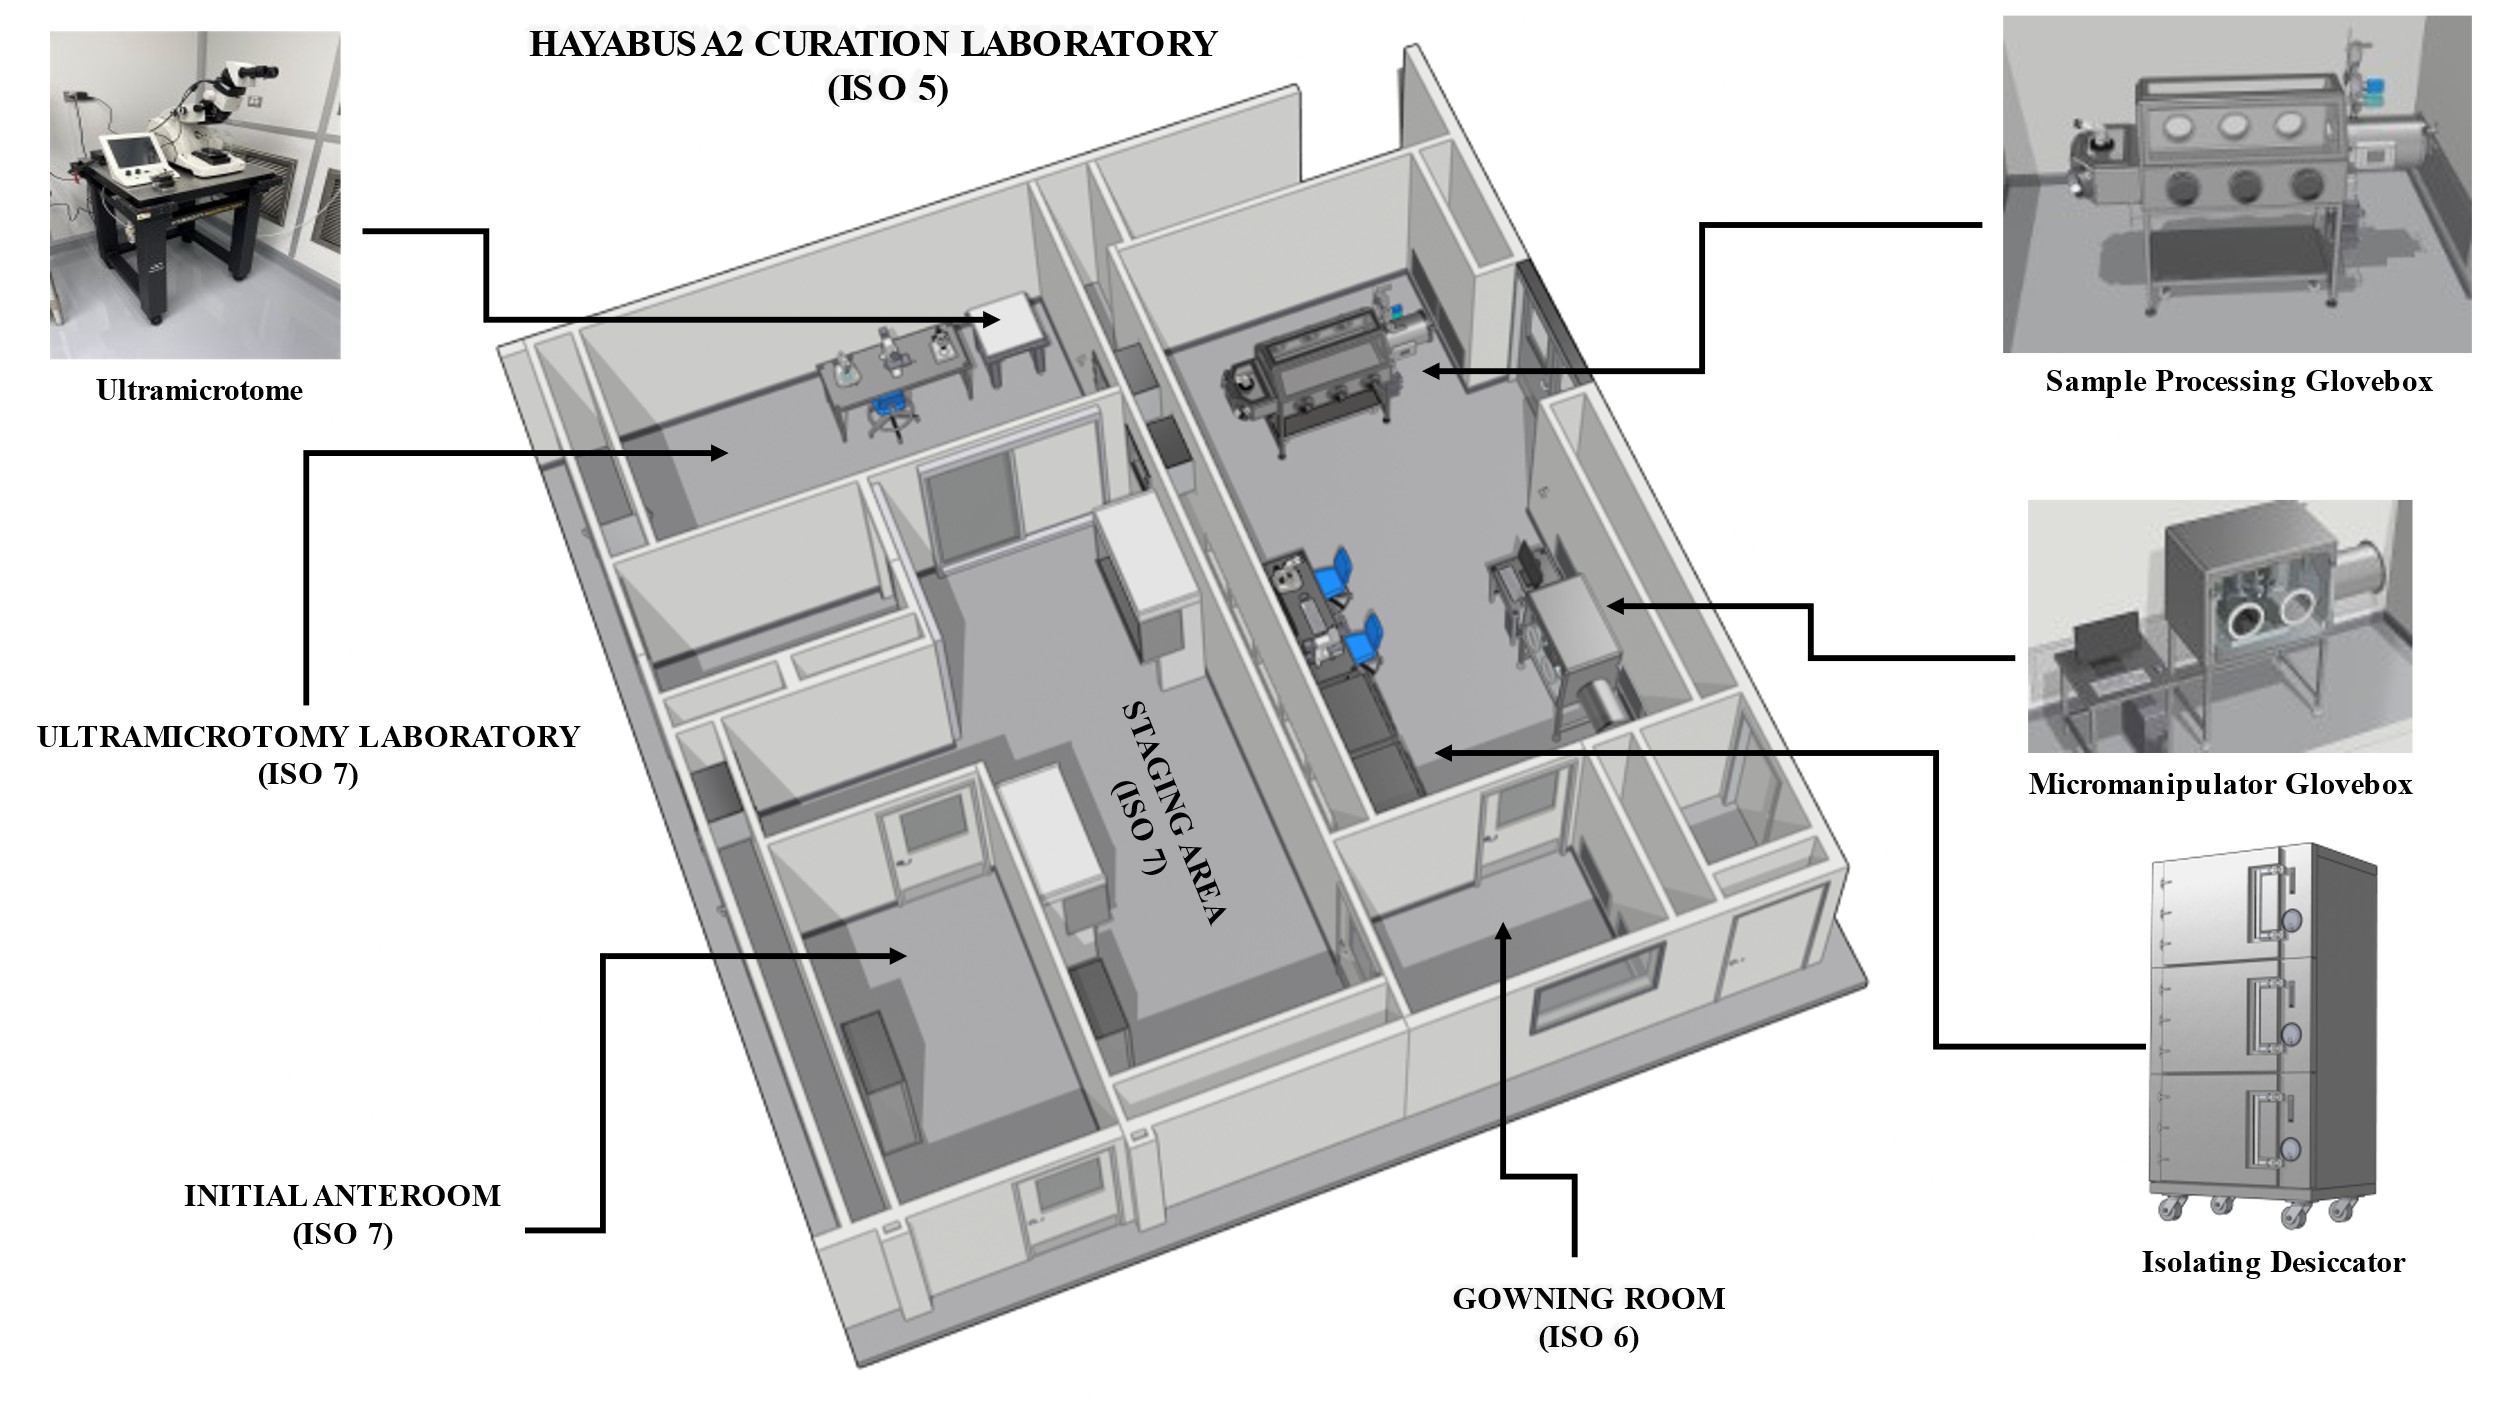 Hayabusa2 Curation Facilities at Johnson Space Center